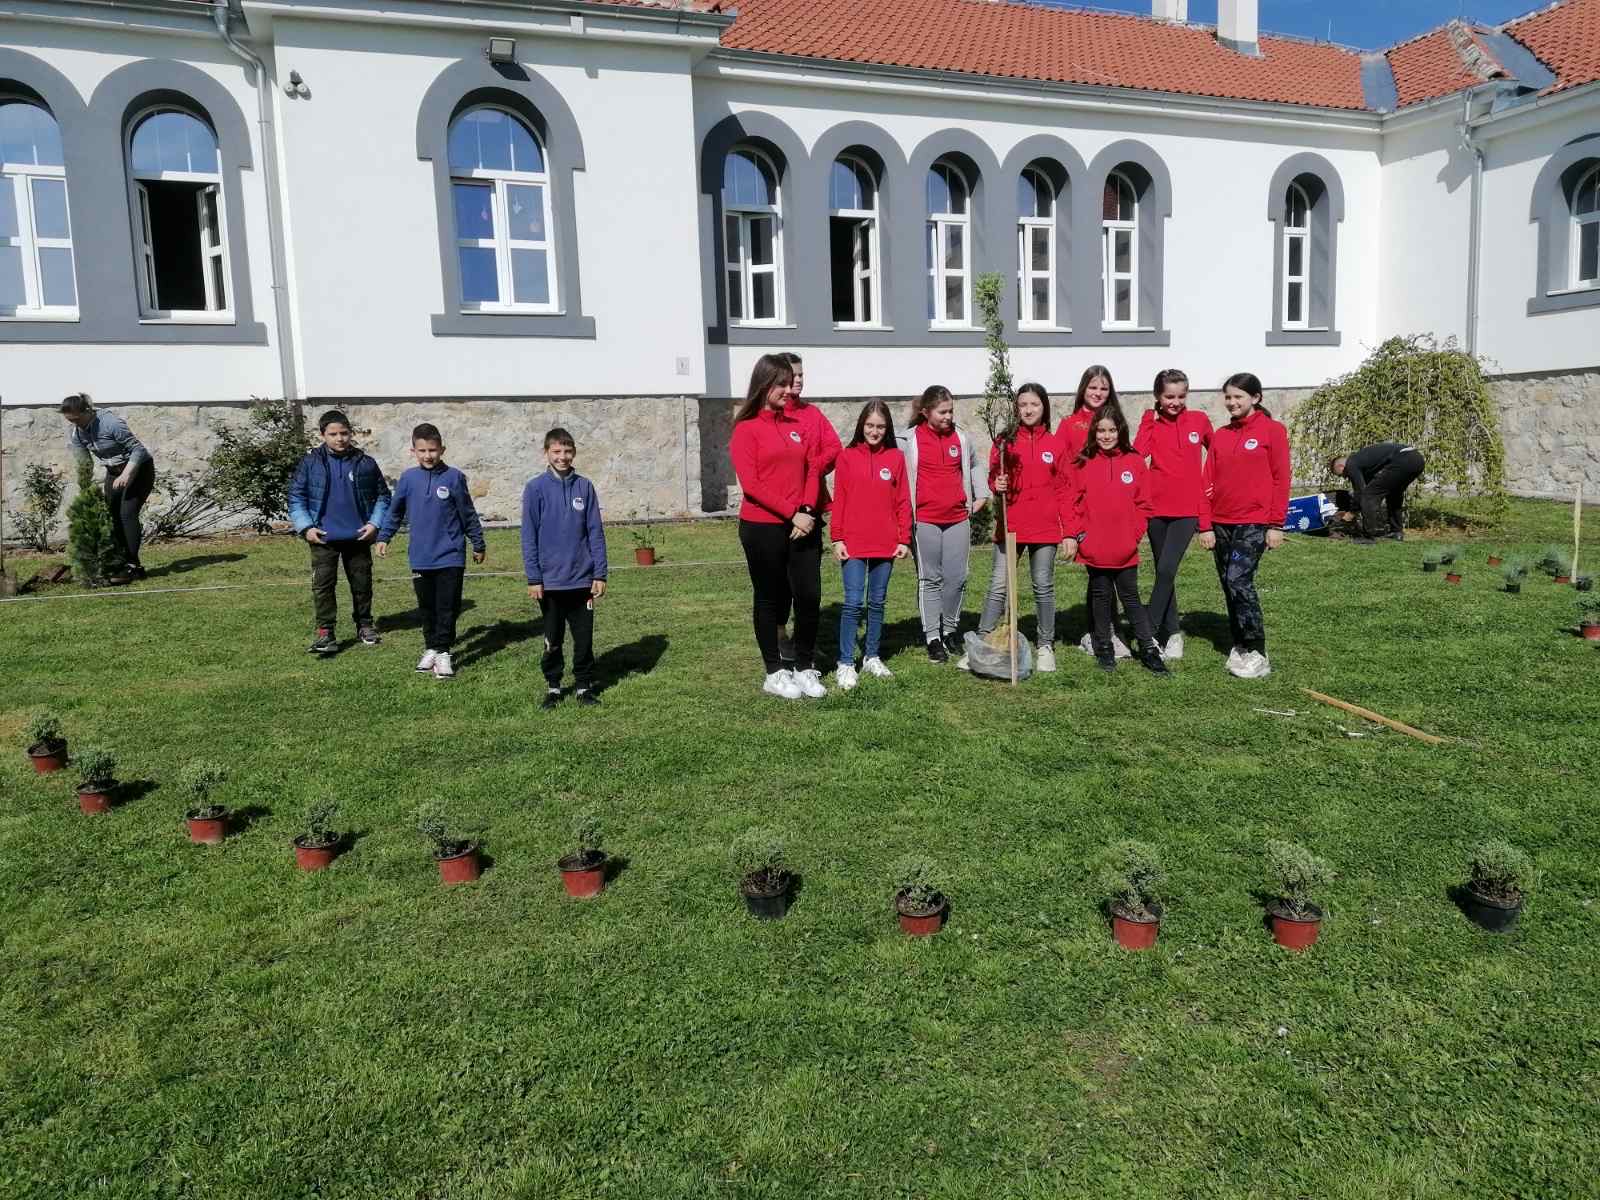 Prva škola u Srbiji koja je uvela uniforme - Borba